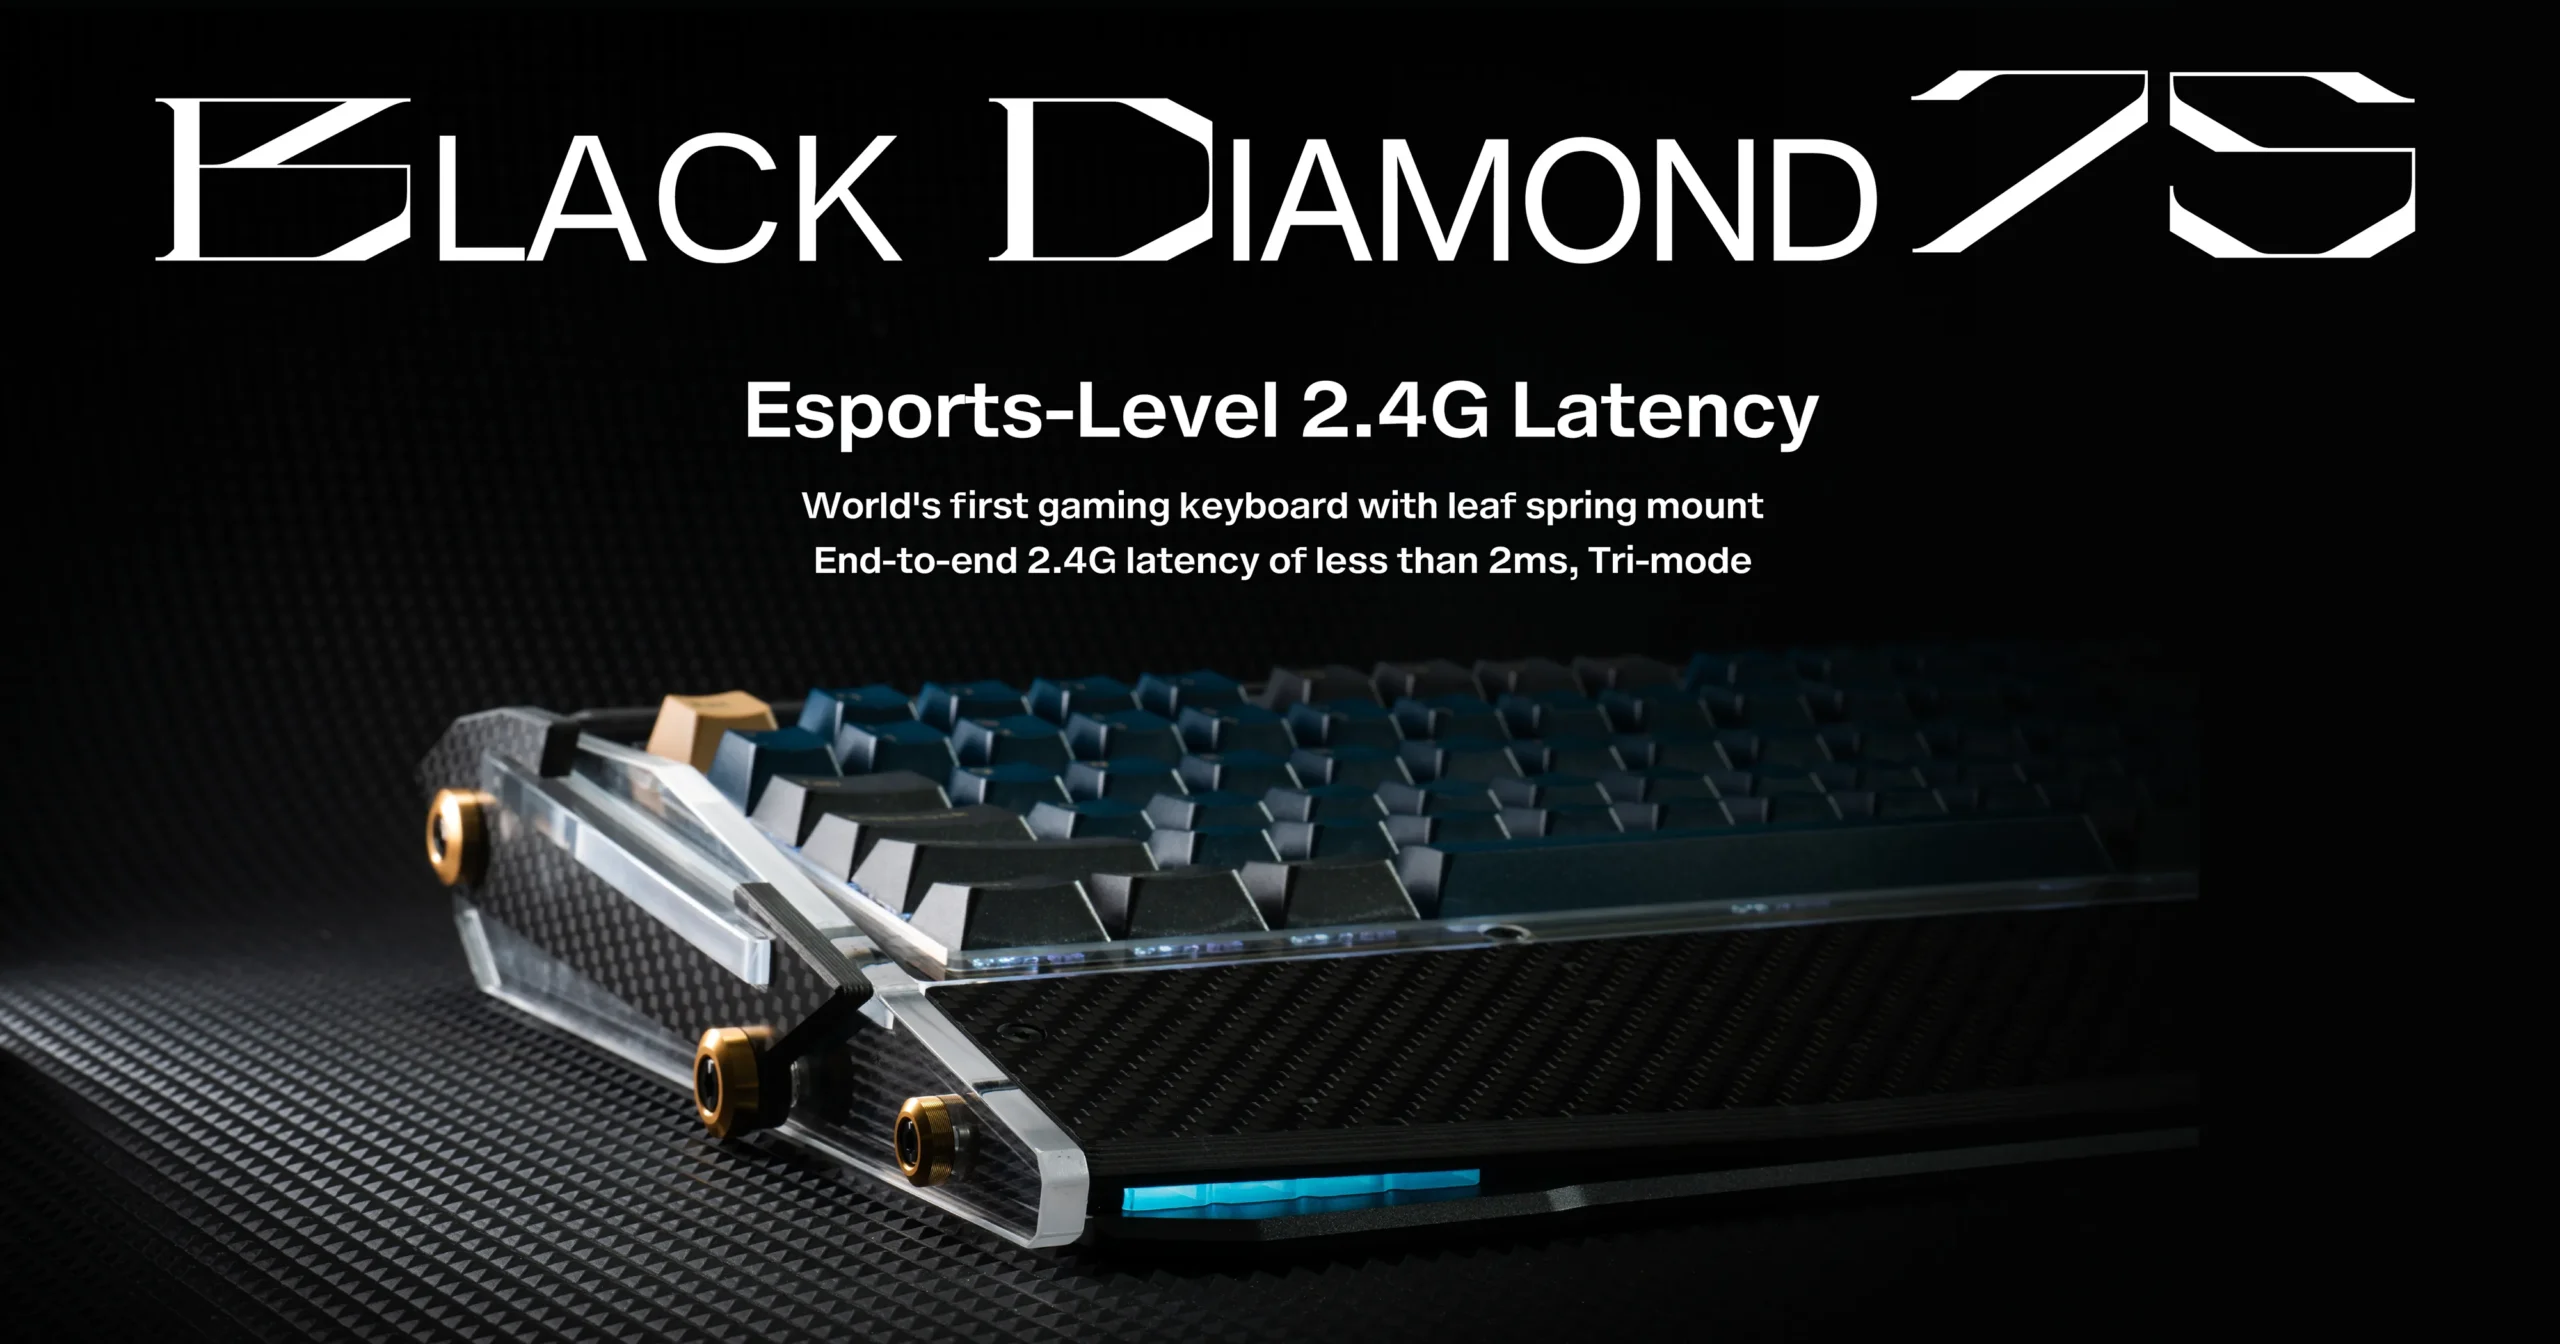 Bàn phím cơ Black Diamond 75 - Bàn phím cơ lấy cảm hứng từ siêu xe Lamborghini Aventador